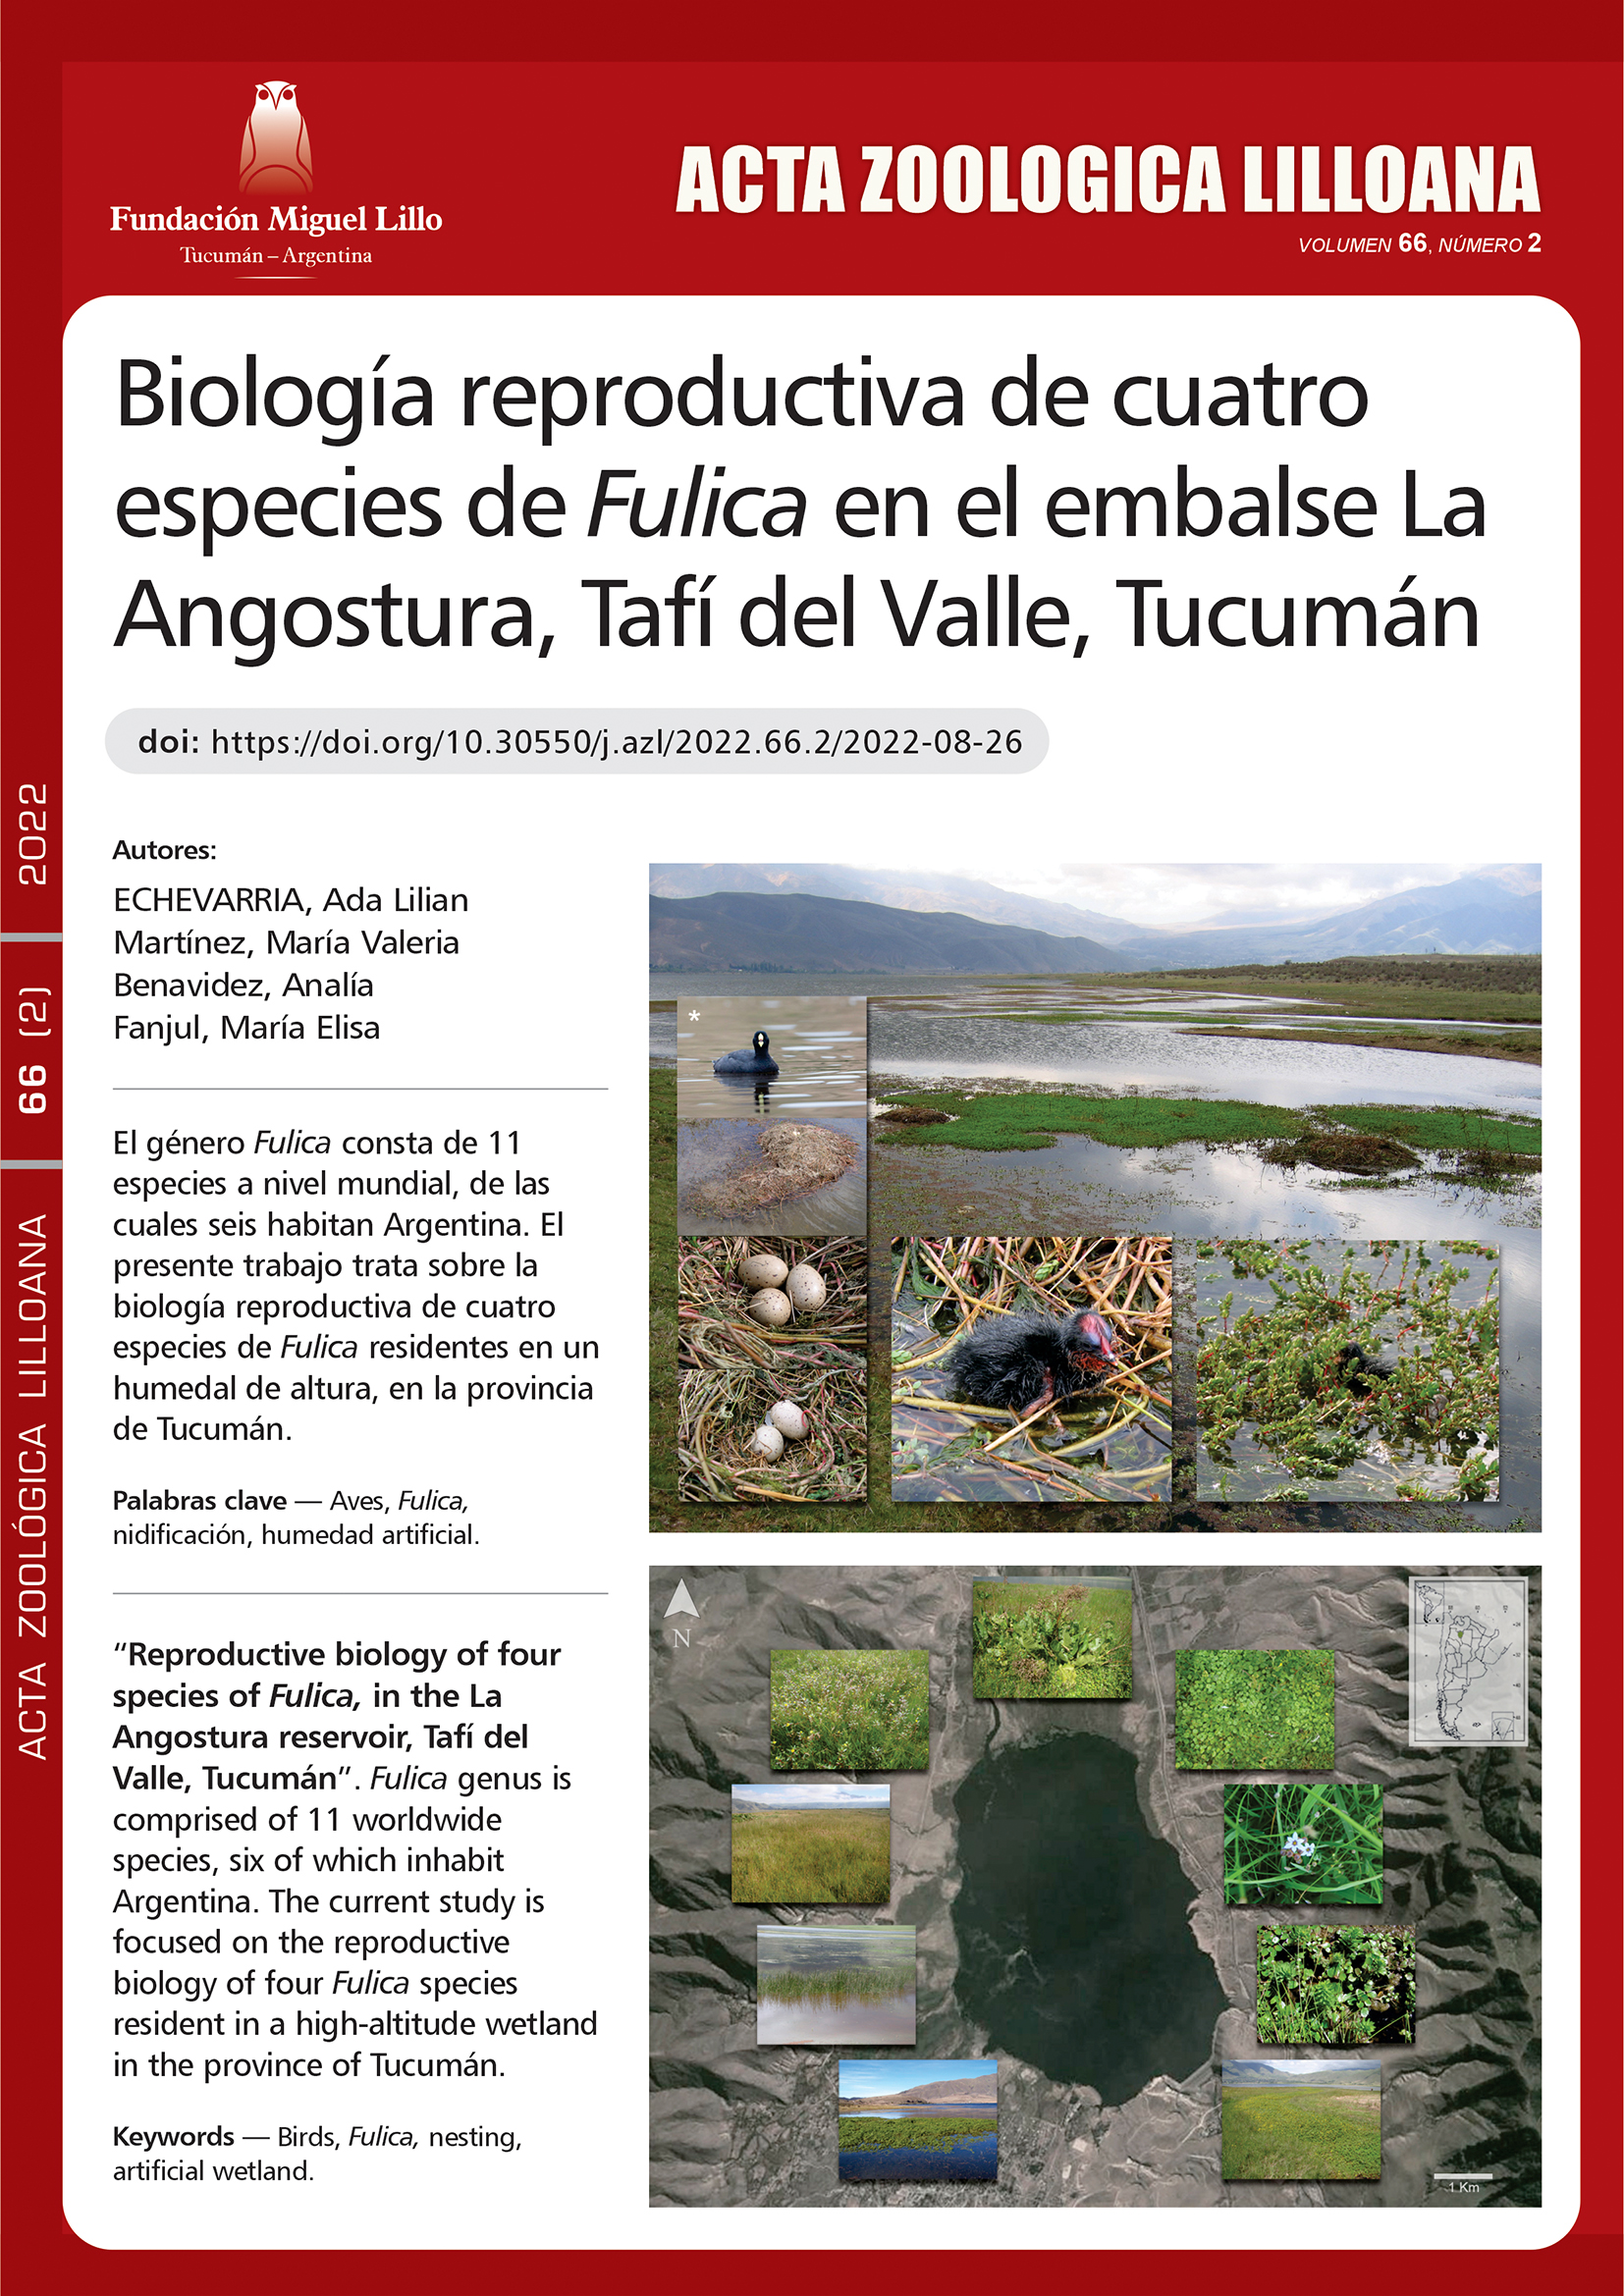 Biología reproductiva de cuatro especies de Fulica, en el embalse La Angostura, Tafí del Valle, Tucumán